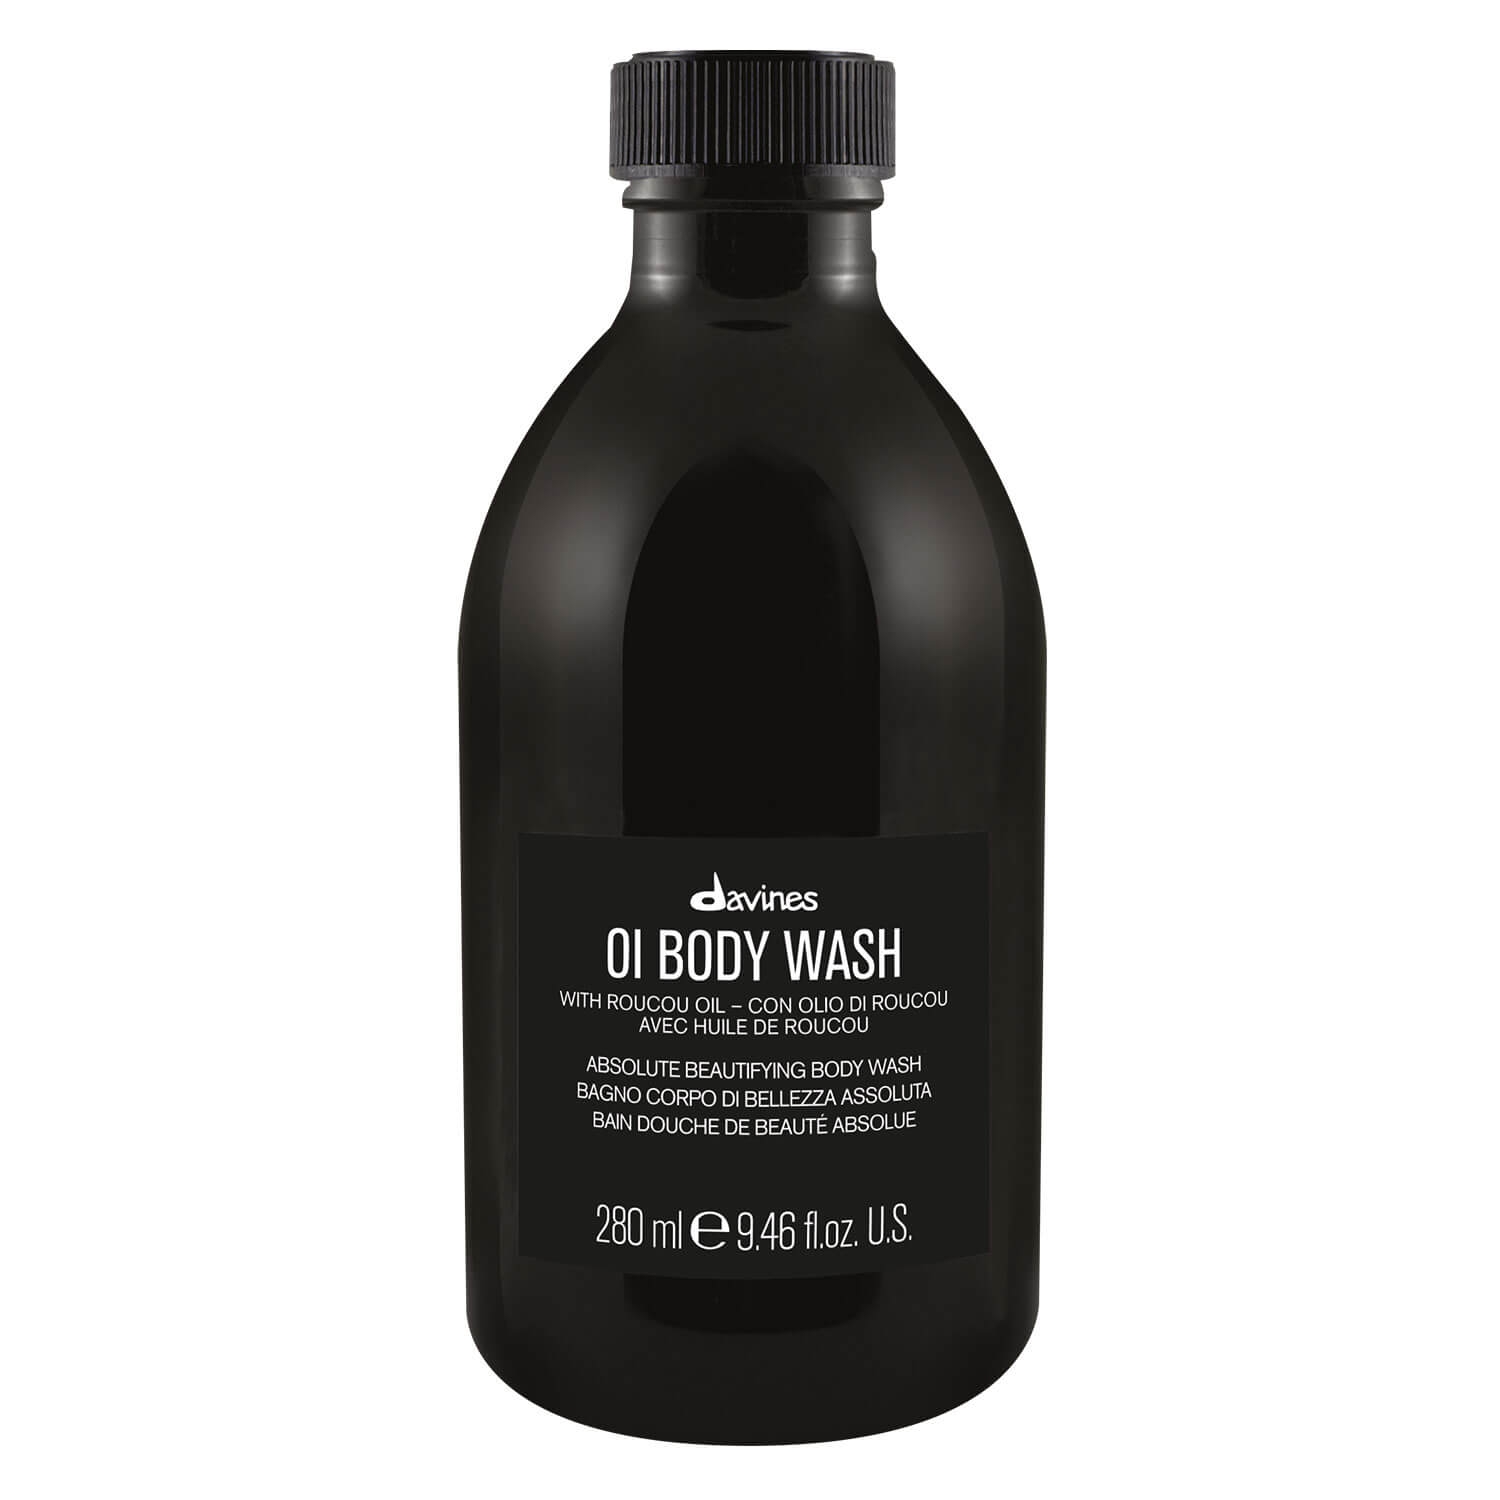 Produktbild von Oi - Body Wash